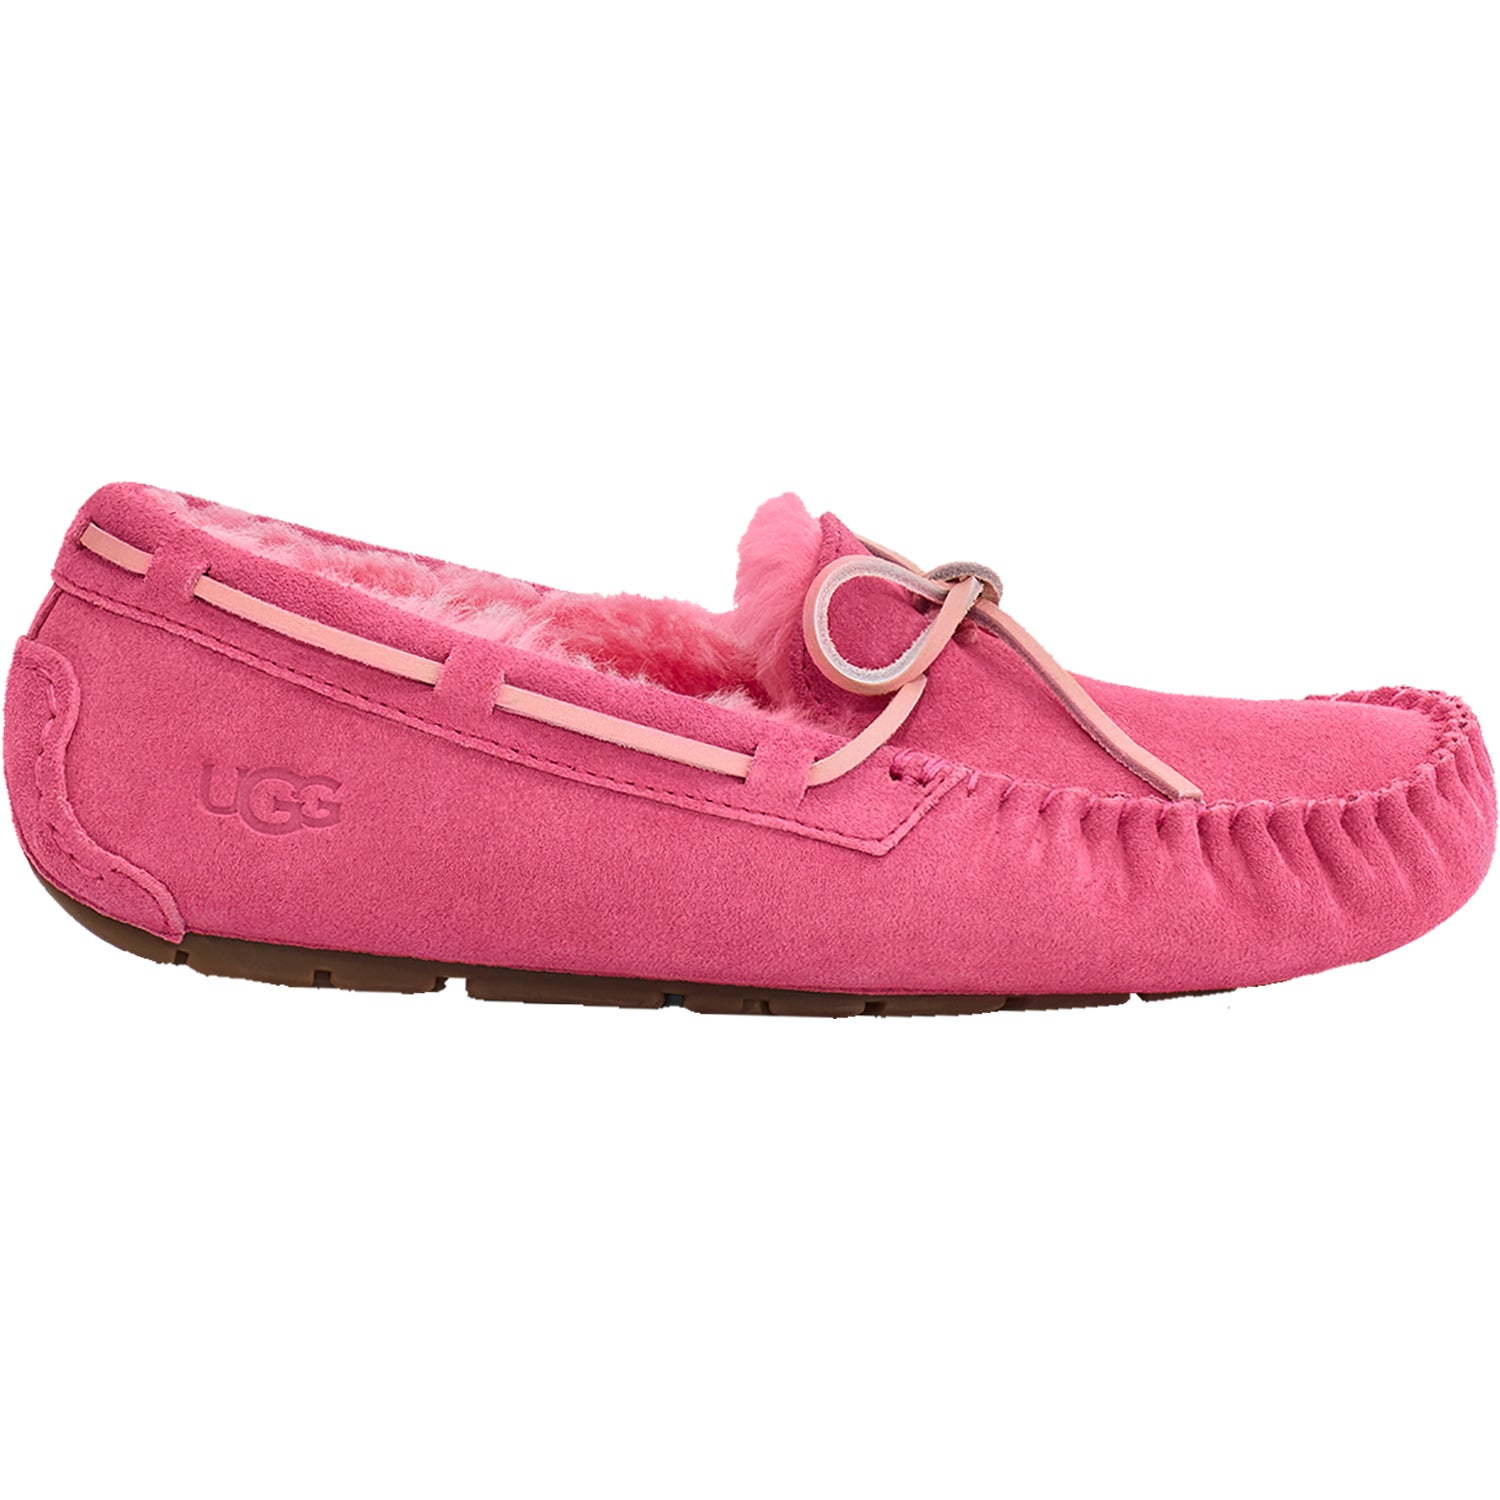 Women's UGG Dakota Pink Rose Suede – Footwear etc.